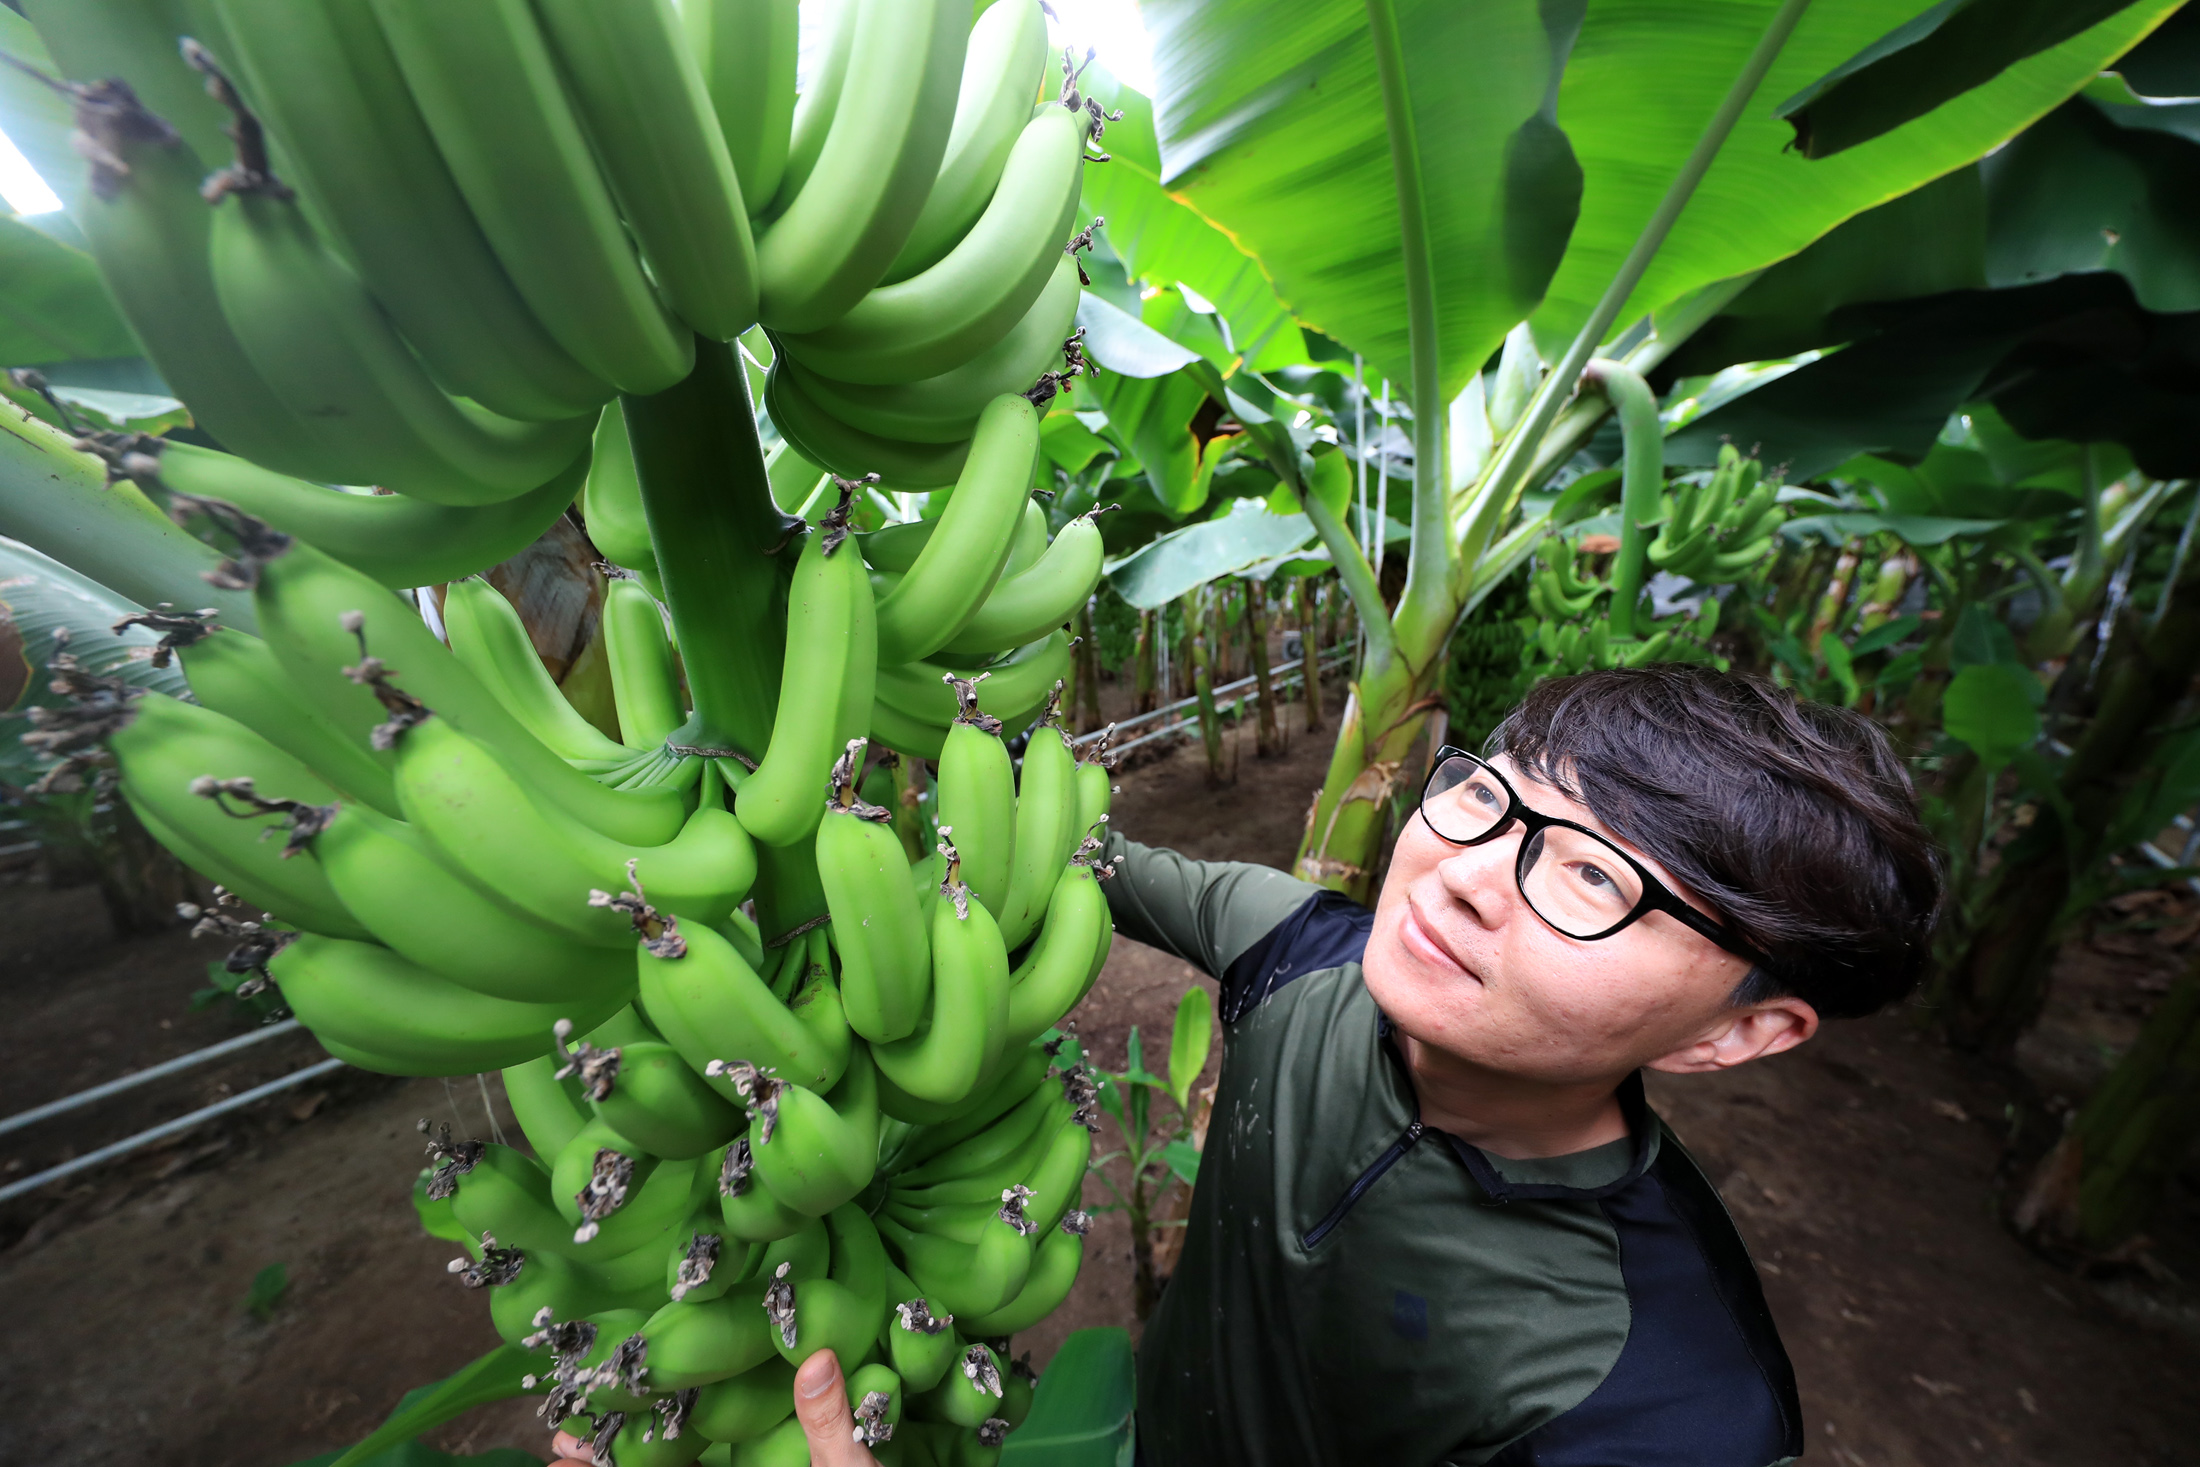 바나나 대량 재배 성공 산청 생비량면 청년 농업창업 강승훈 대표 1-1.jpg